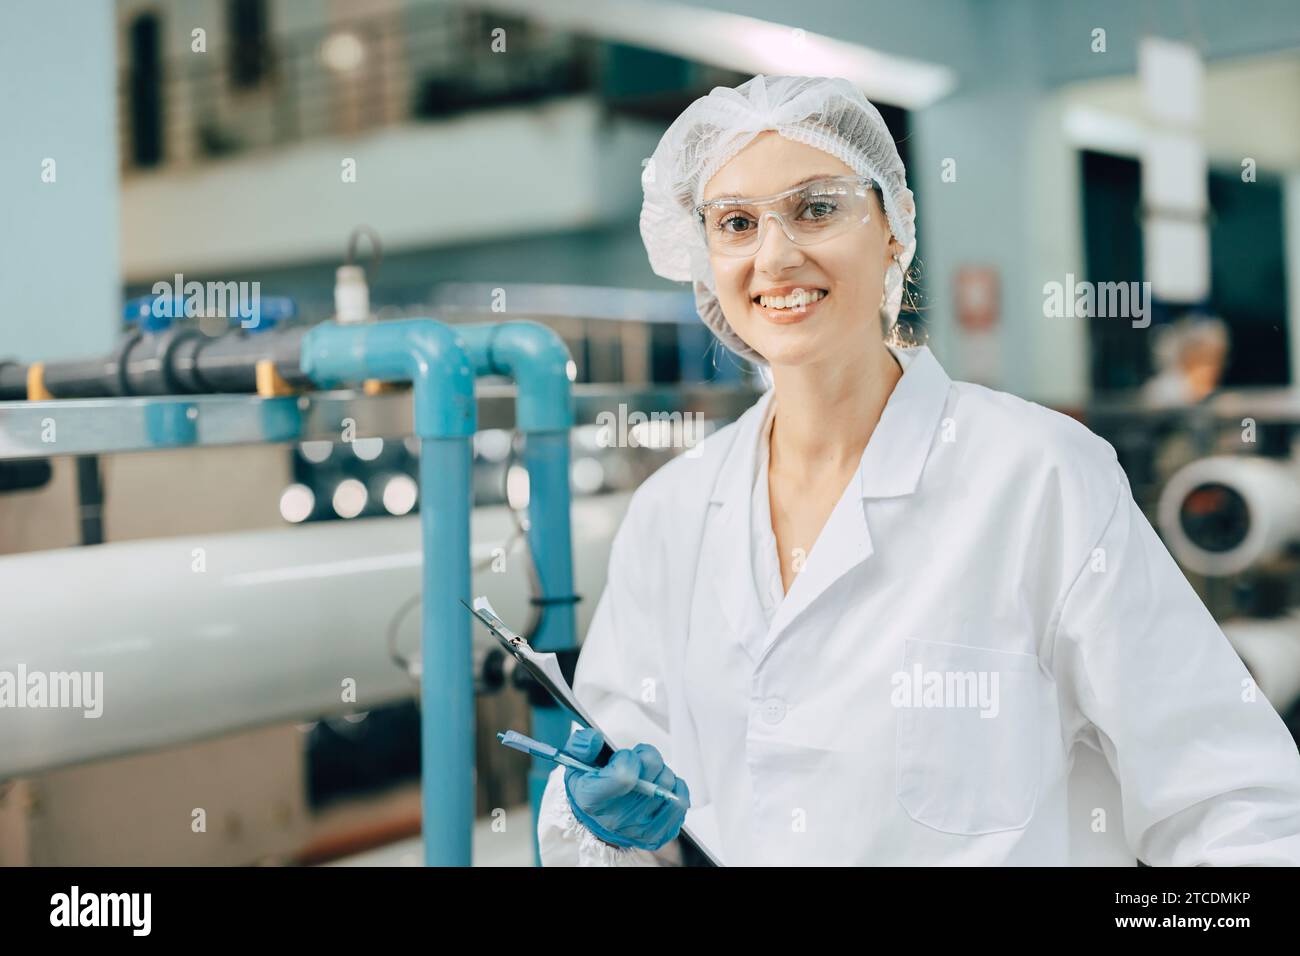 Porträt glückliche Frauen Personal Arbeiter in Trinkwasseranlage Arbeit Kontrolle Wasserqualität Reinigung Testprozess. Stockfoto